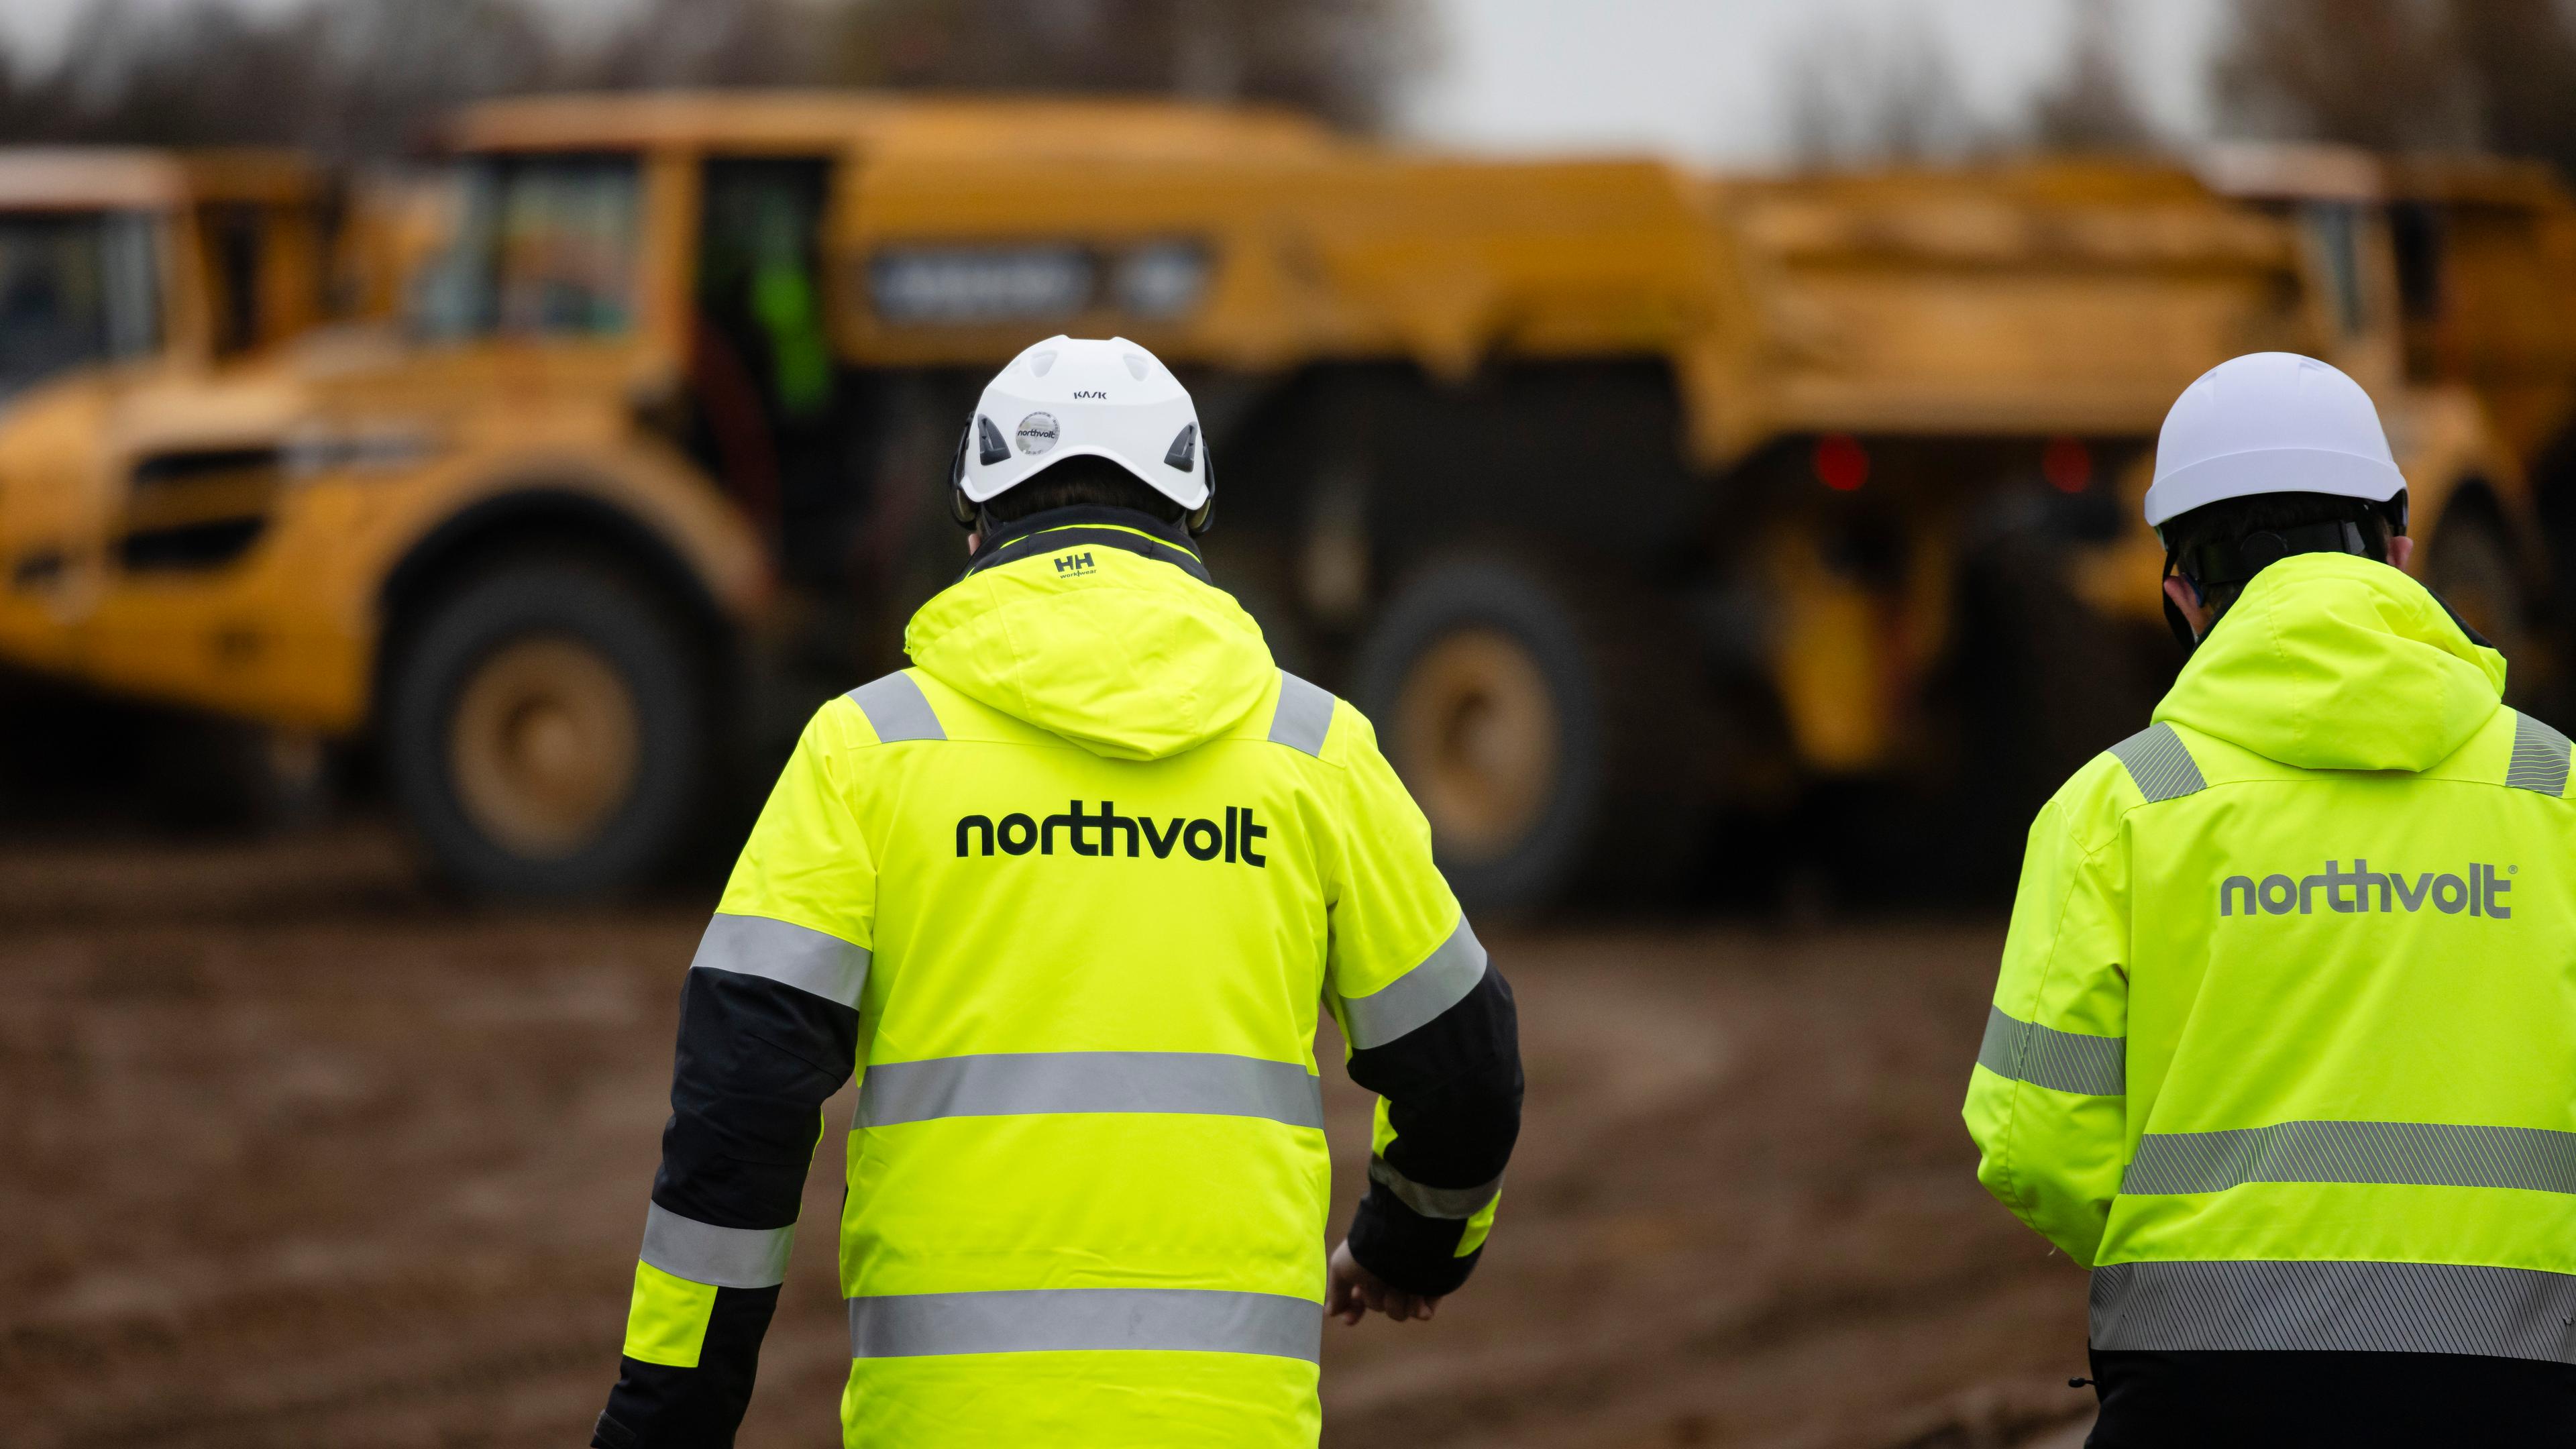 Ein Baustellenarbeiter trägt eine gelbe Warnweste mit der Aufschrift "Northvolt"